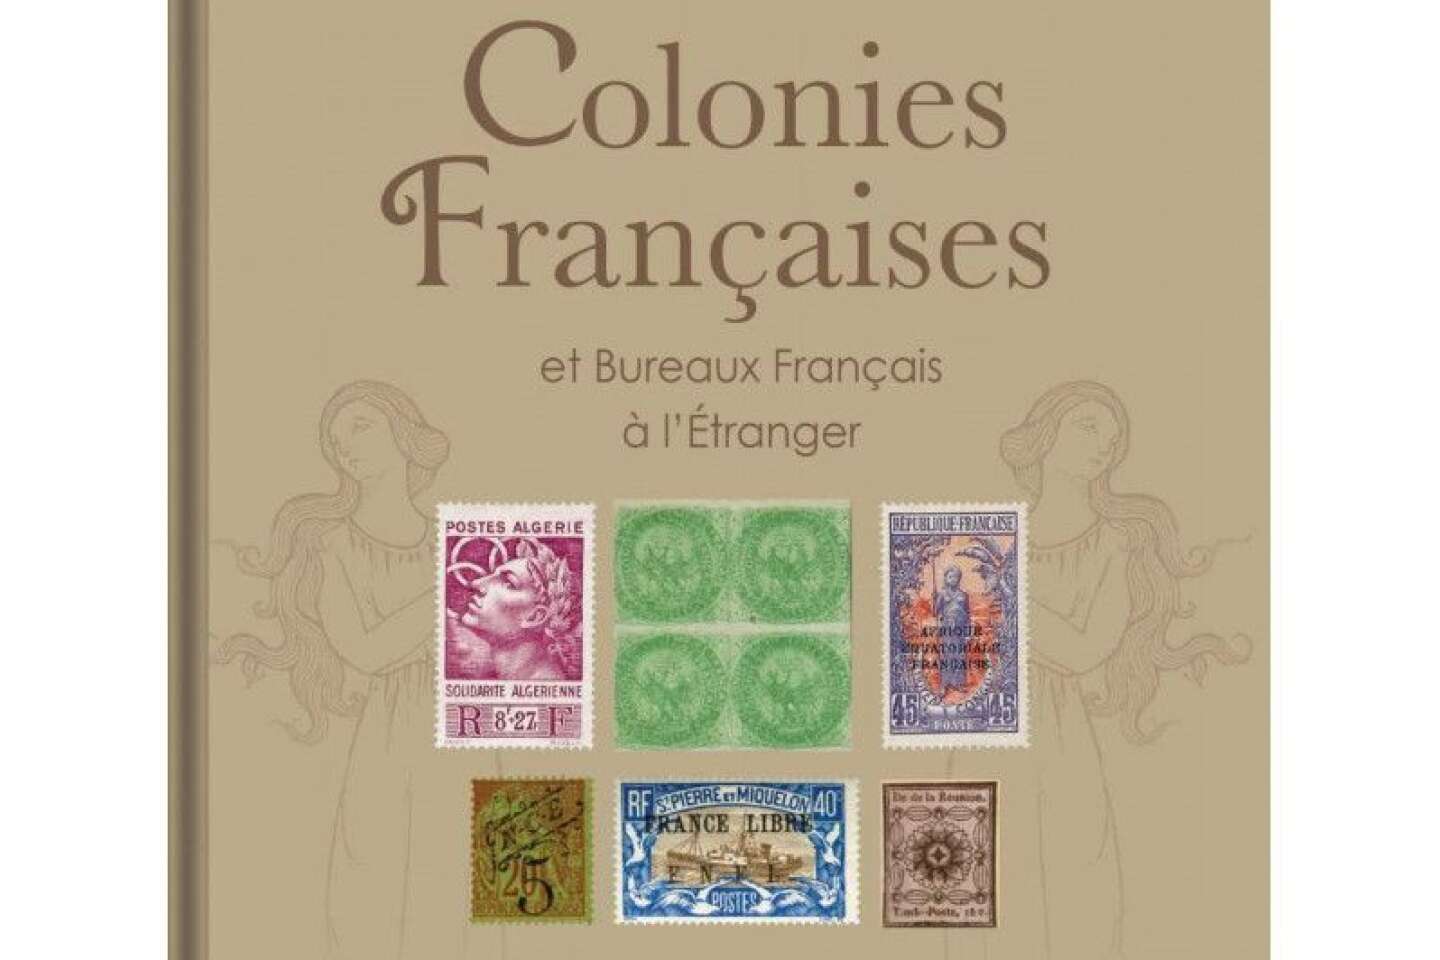 https://img.lemde.fr/2021/12/31/142/0/800/532/1440/960/60/0/af872bb_609544534-yvert-et-tellier-colonies-francaises.jpg